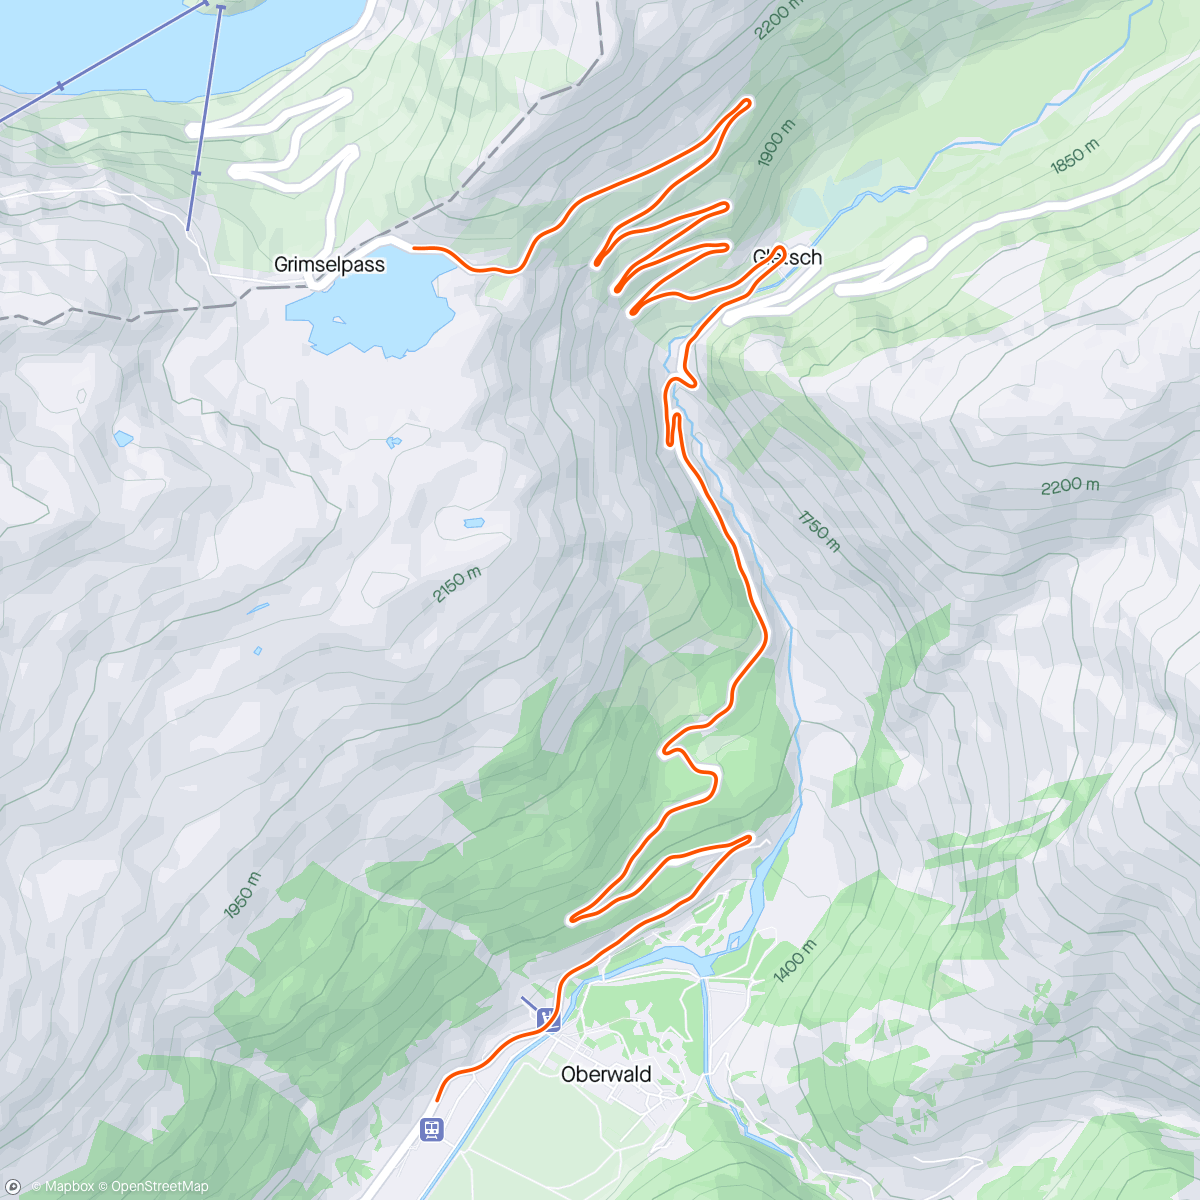 Mappa dell'attività ROUVY - Grimselpass (from Oberwald)